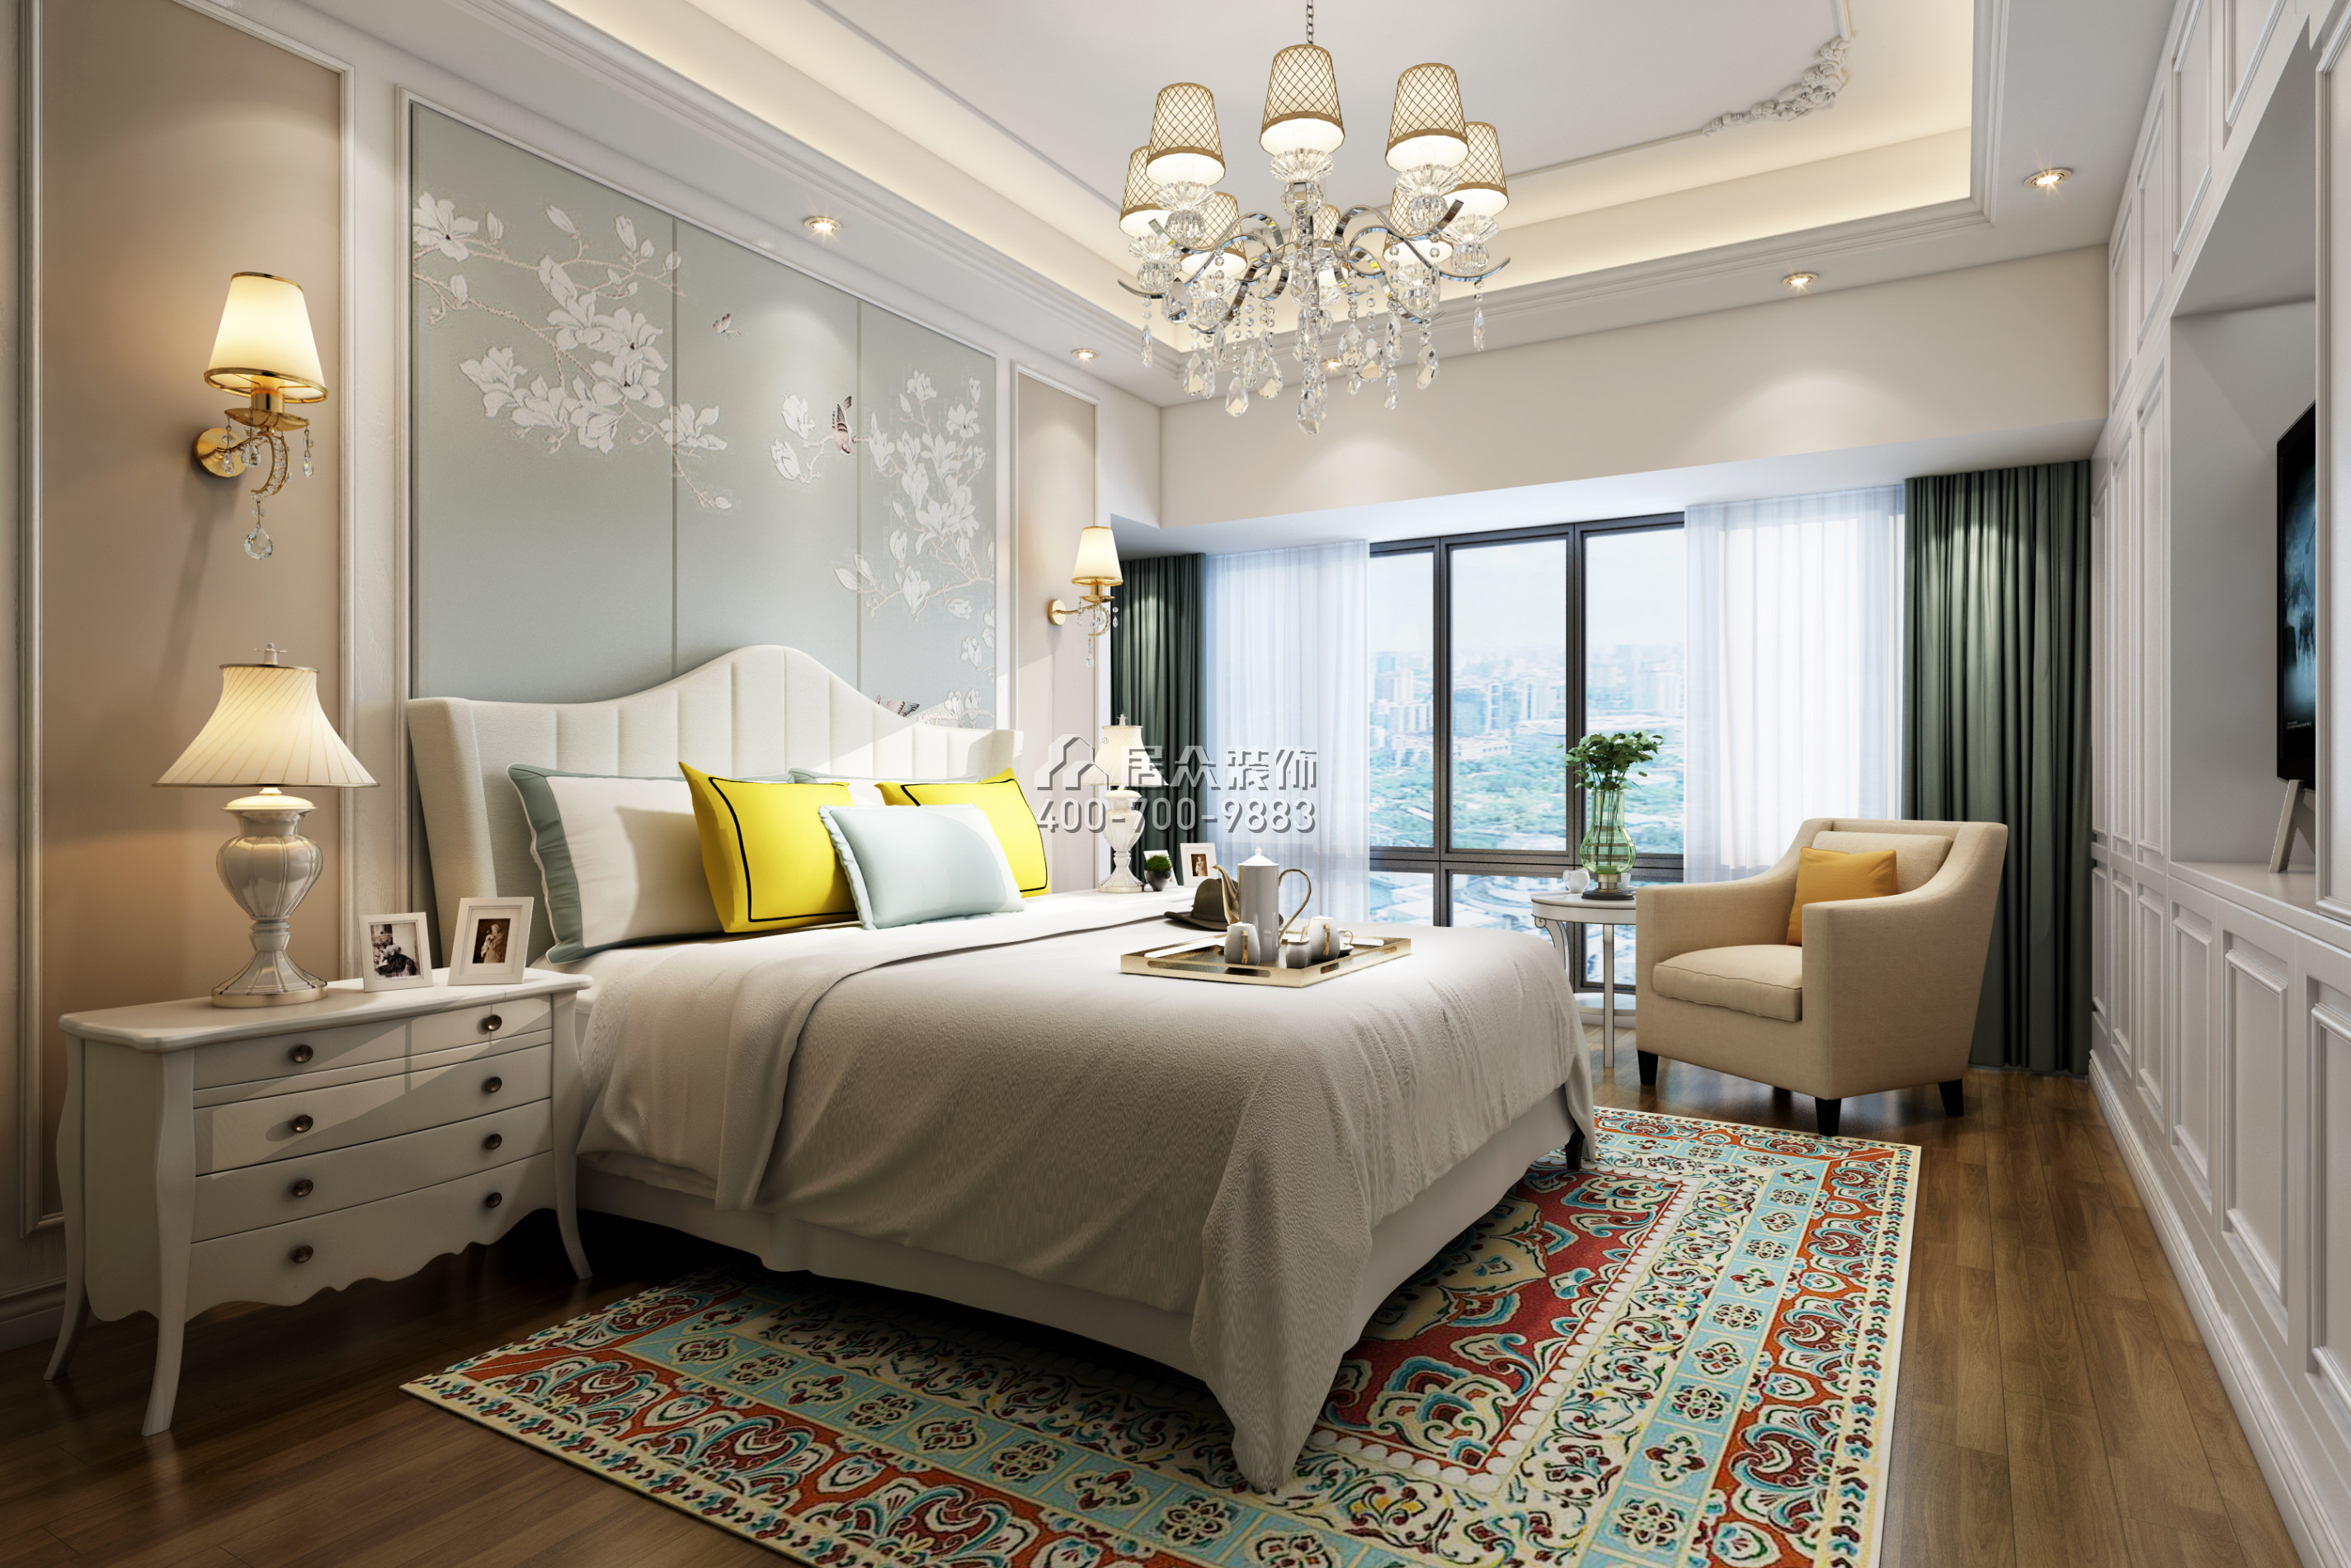 薈港尊邸140平方米歐式風格平層戶型臥室裝修效果圖